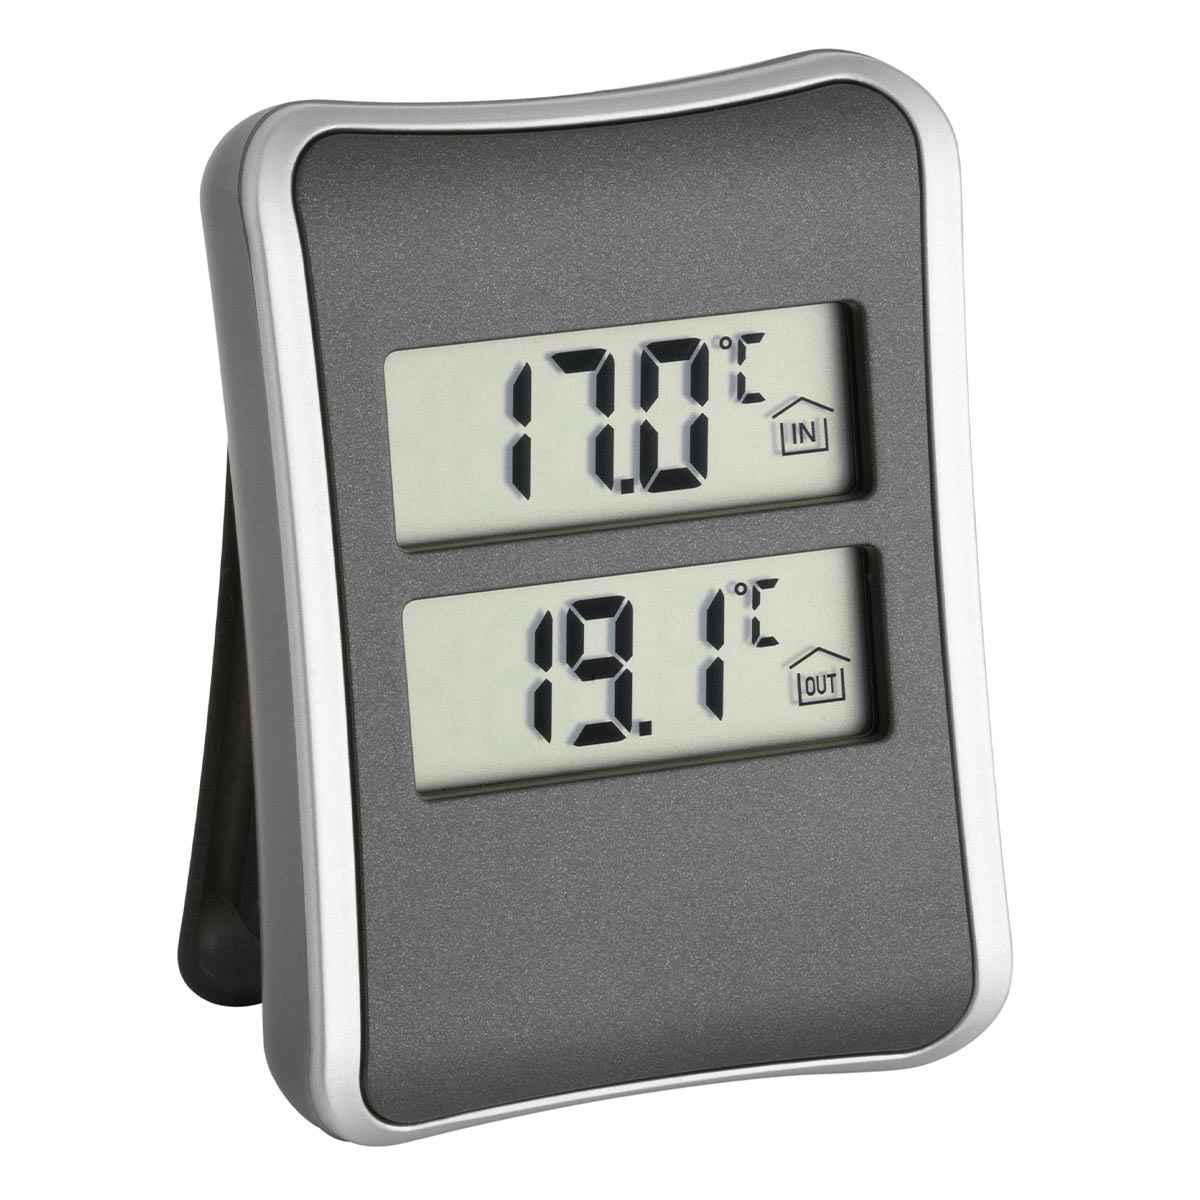 30-1044-digitales-innen-aussen-thermometer-ansicht-1200x1200px.jpg